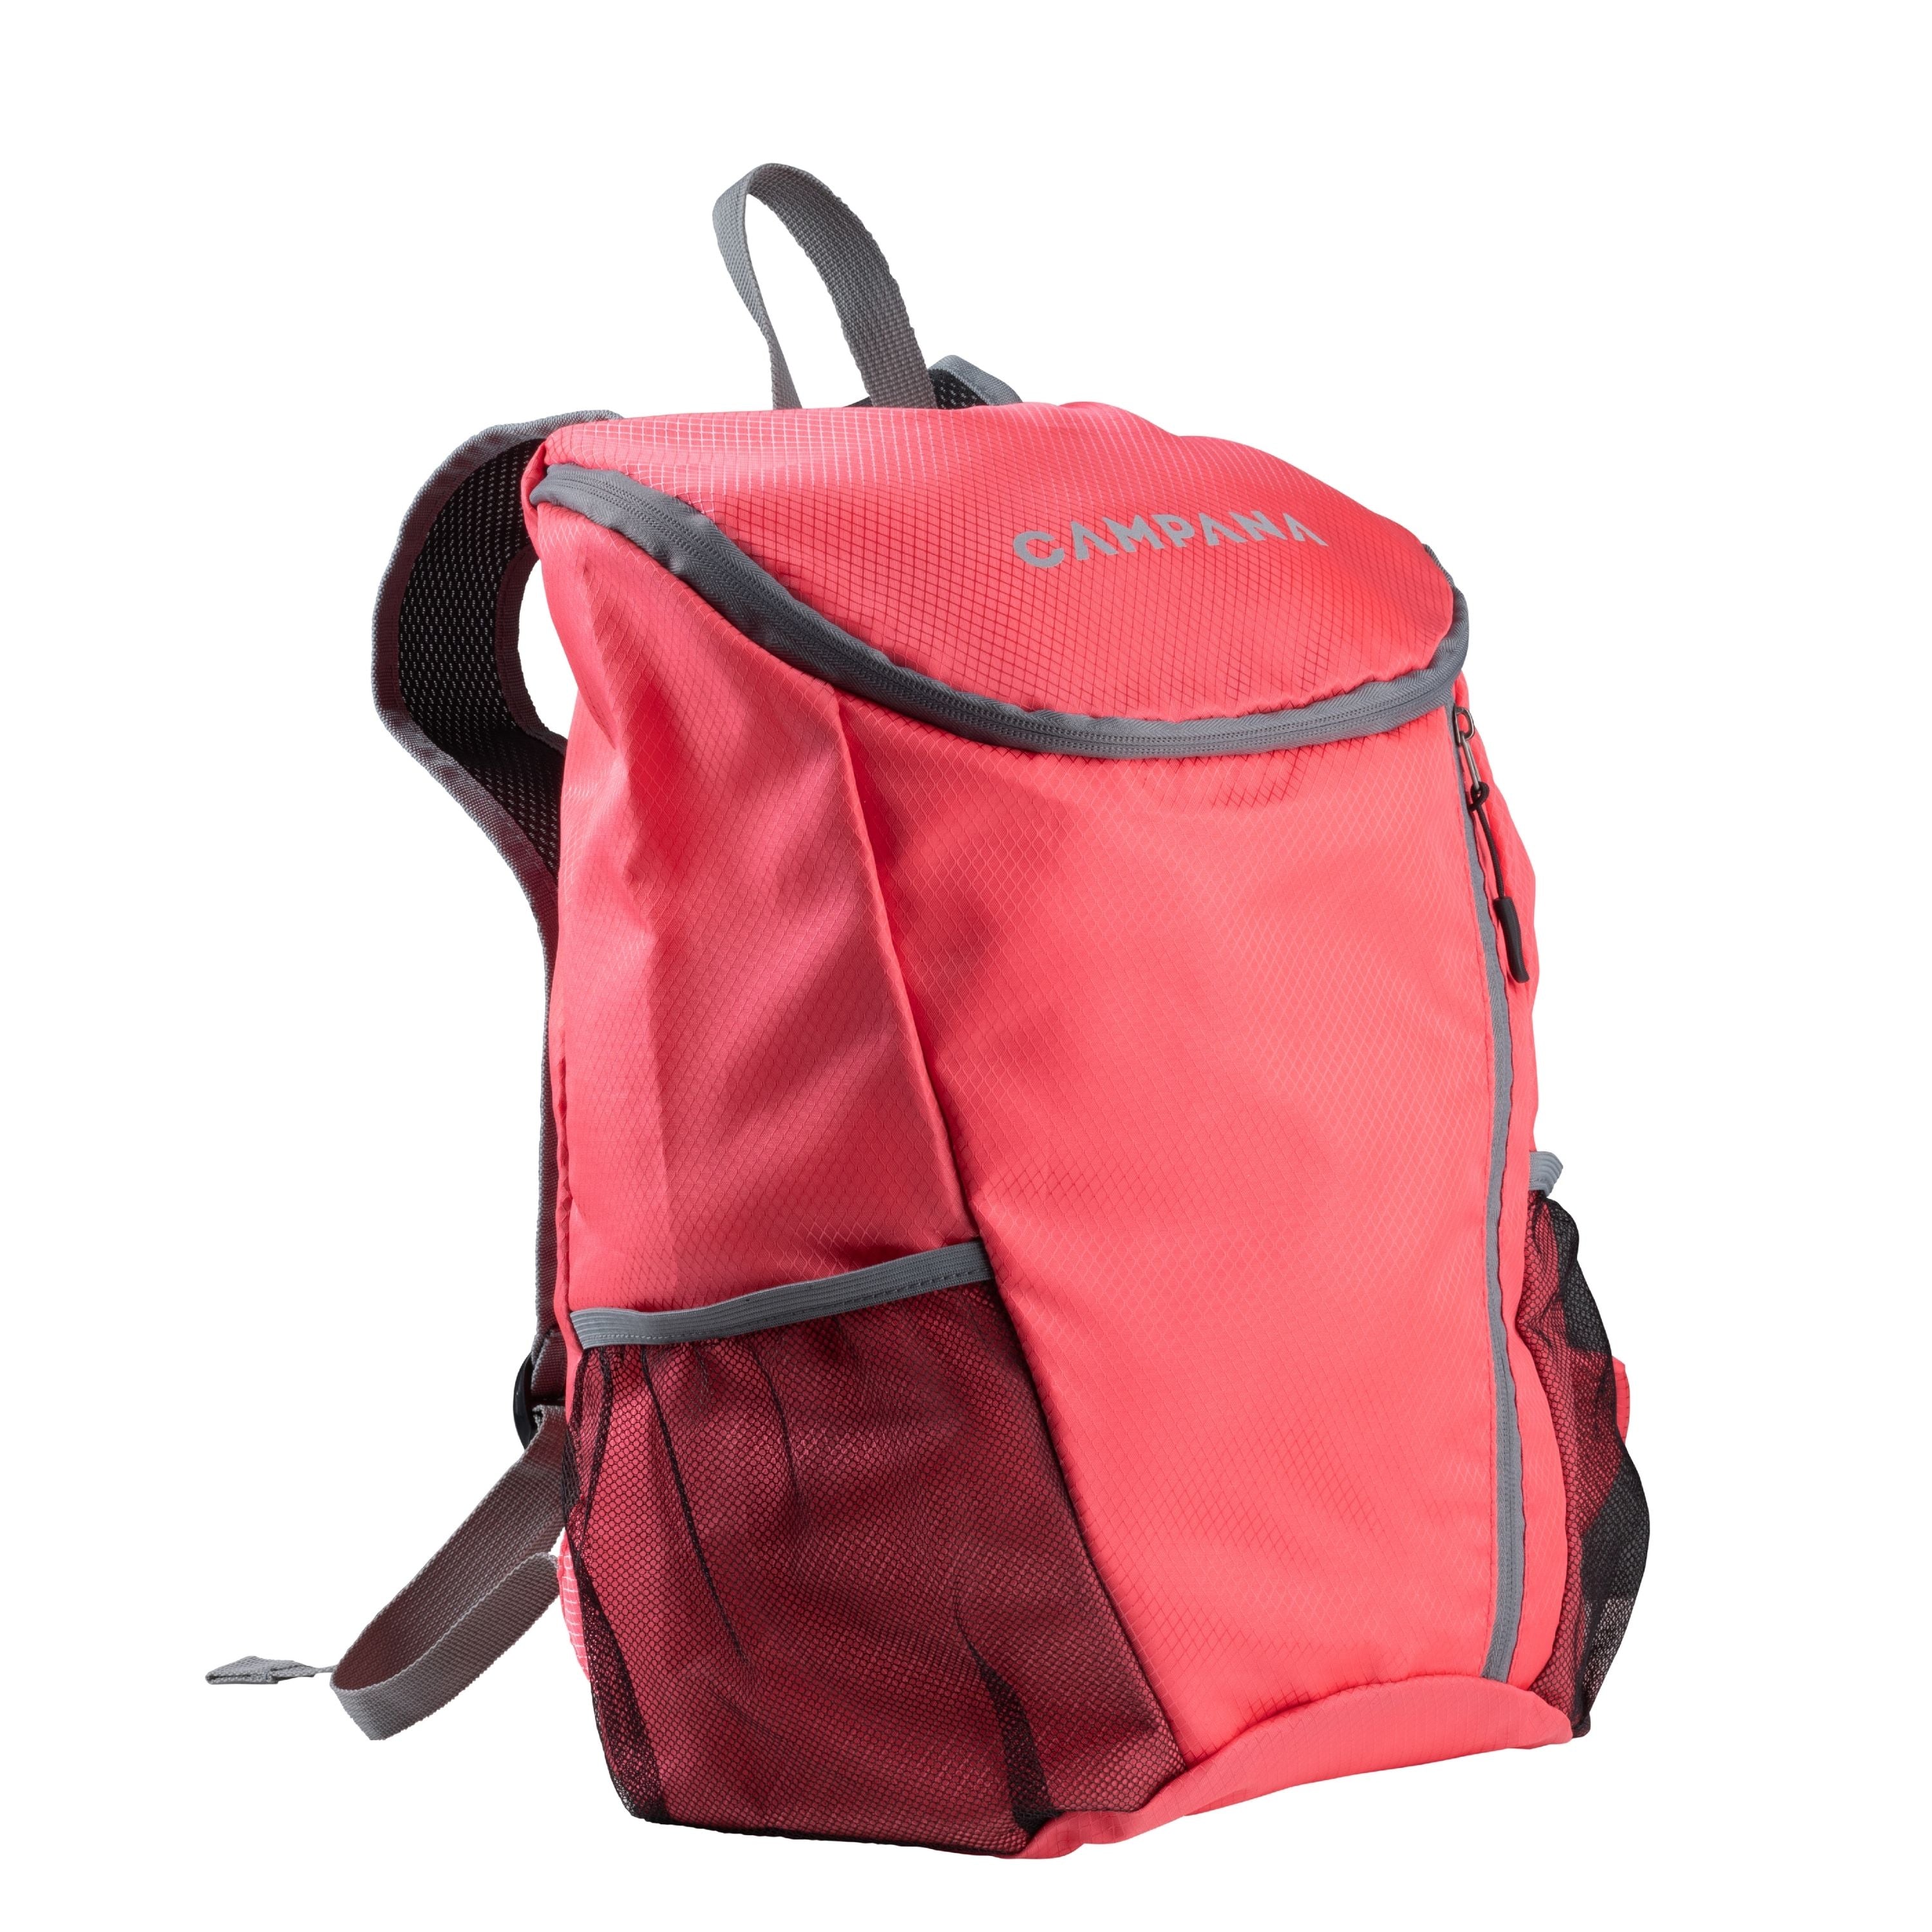 Ultra light backpack